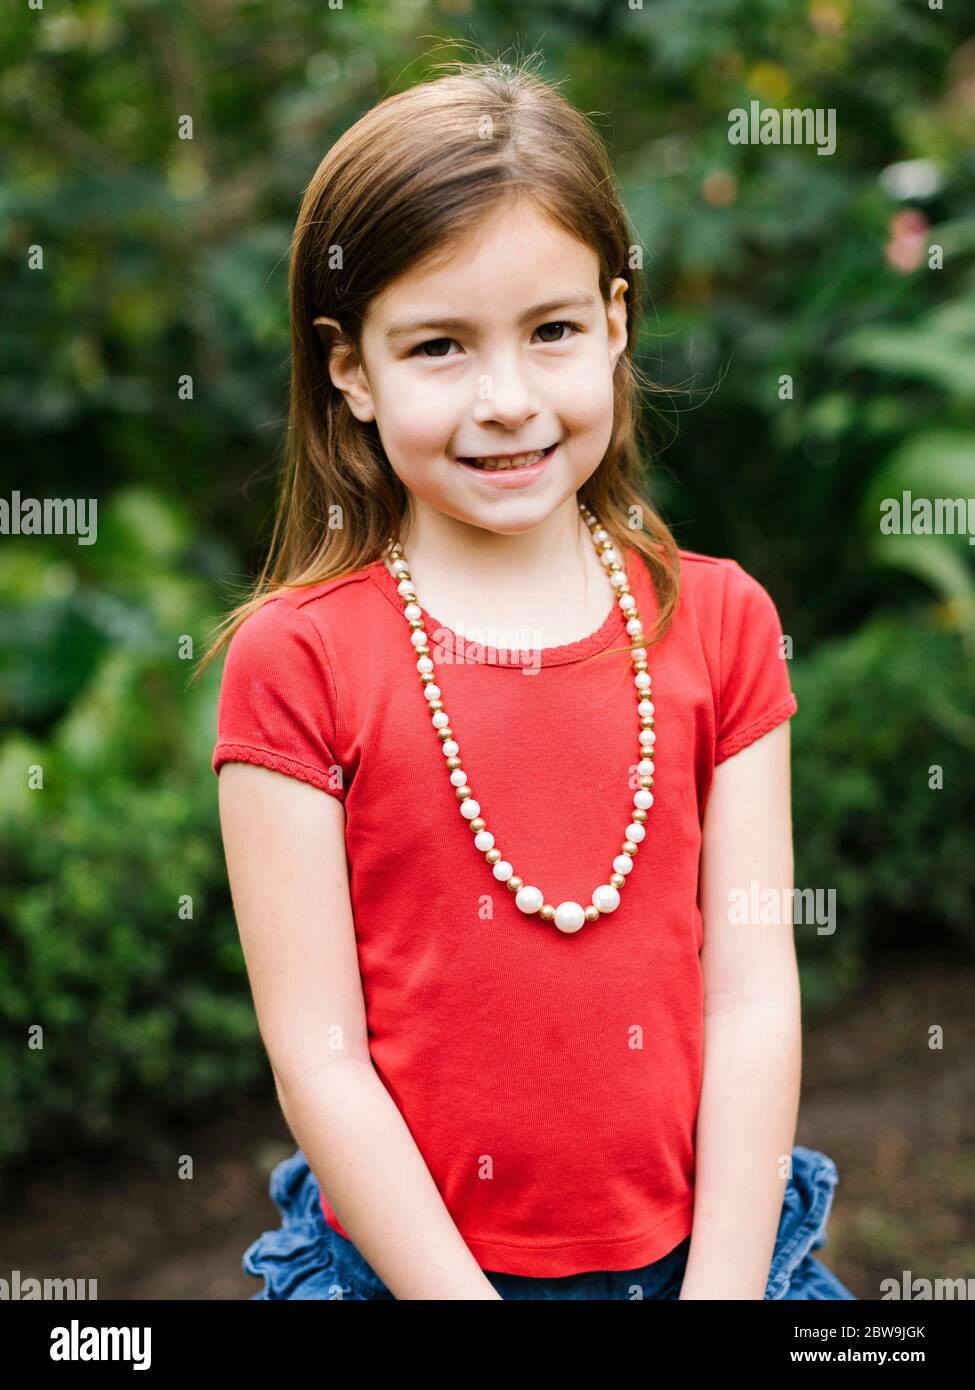 USA, Californie, Orange County, Portrait de fille souriante (6-7) portant un collier de perles Banque D'Images